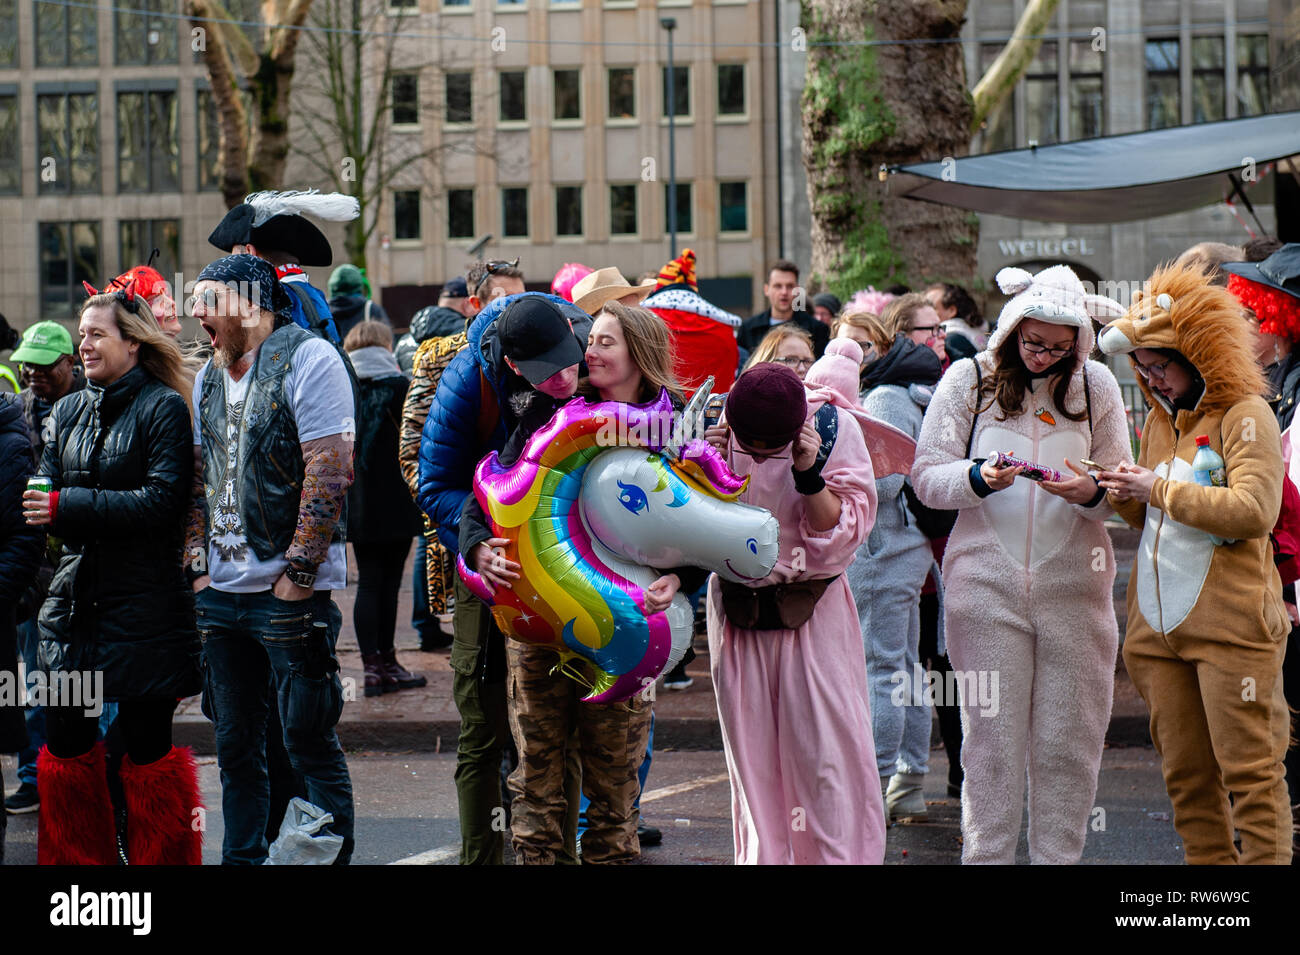 Leute in Kostümen während der Parade zu sehen. In Düsseldorf, der Kalender der Karneval Veranstaltungen verfügt über nicht weniger als 300 Karneval zeigt, Bälle, Jubiläen, Empfänge und Kostüm Parteien. Das Motto dieser Saison ist "Gemeinsam Jeck" (gemeinsam Karneval). Die Feierlichkeiten ihren Höhepunkt in der Rose Montag Parade. Mehr als 30 Ensembles und 5.000 Teilnehmer an der Prozession durch die Stadt. Aufwändig gebaut und geschmückten Wagen Adresse kulturellen und politischen Fragen und Satirischen, lustigen und auch umstritten. Die politisch themed schwimmt der Satiriker Jacques Tilly sind bekannt in der Stockfoto